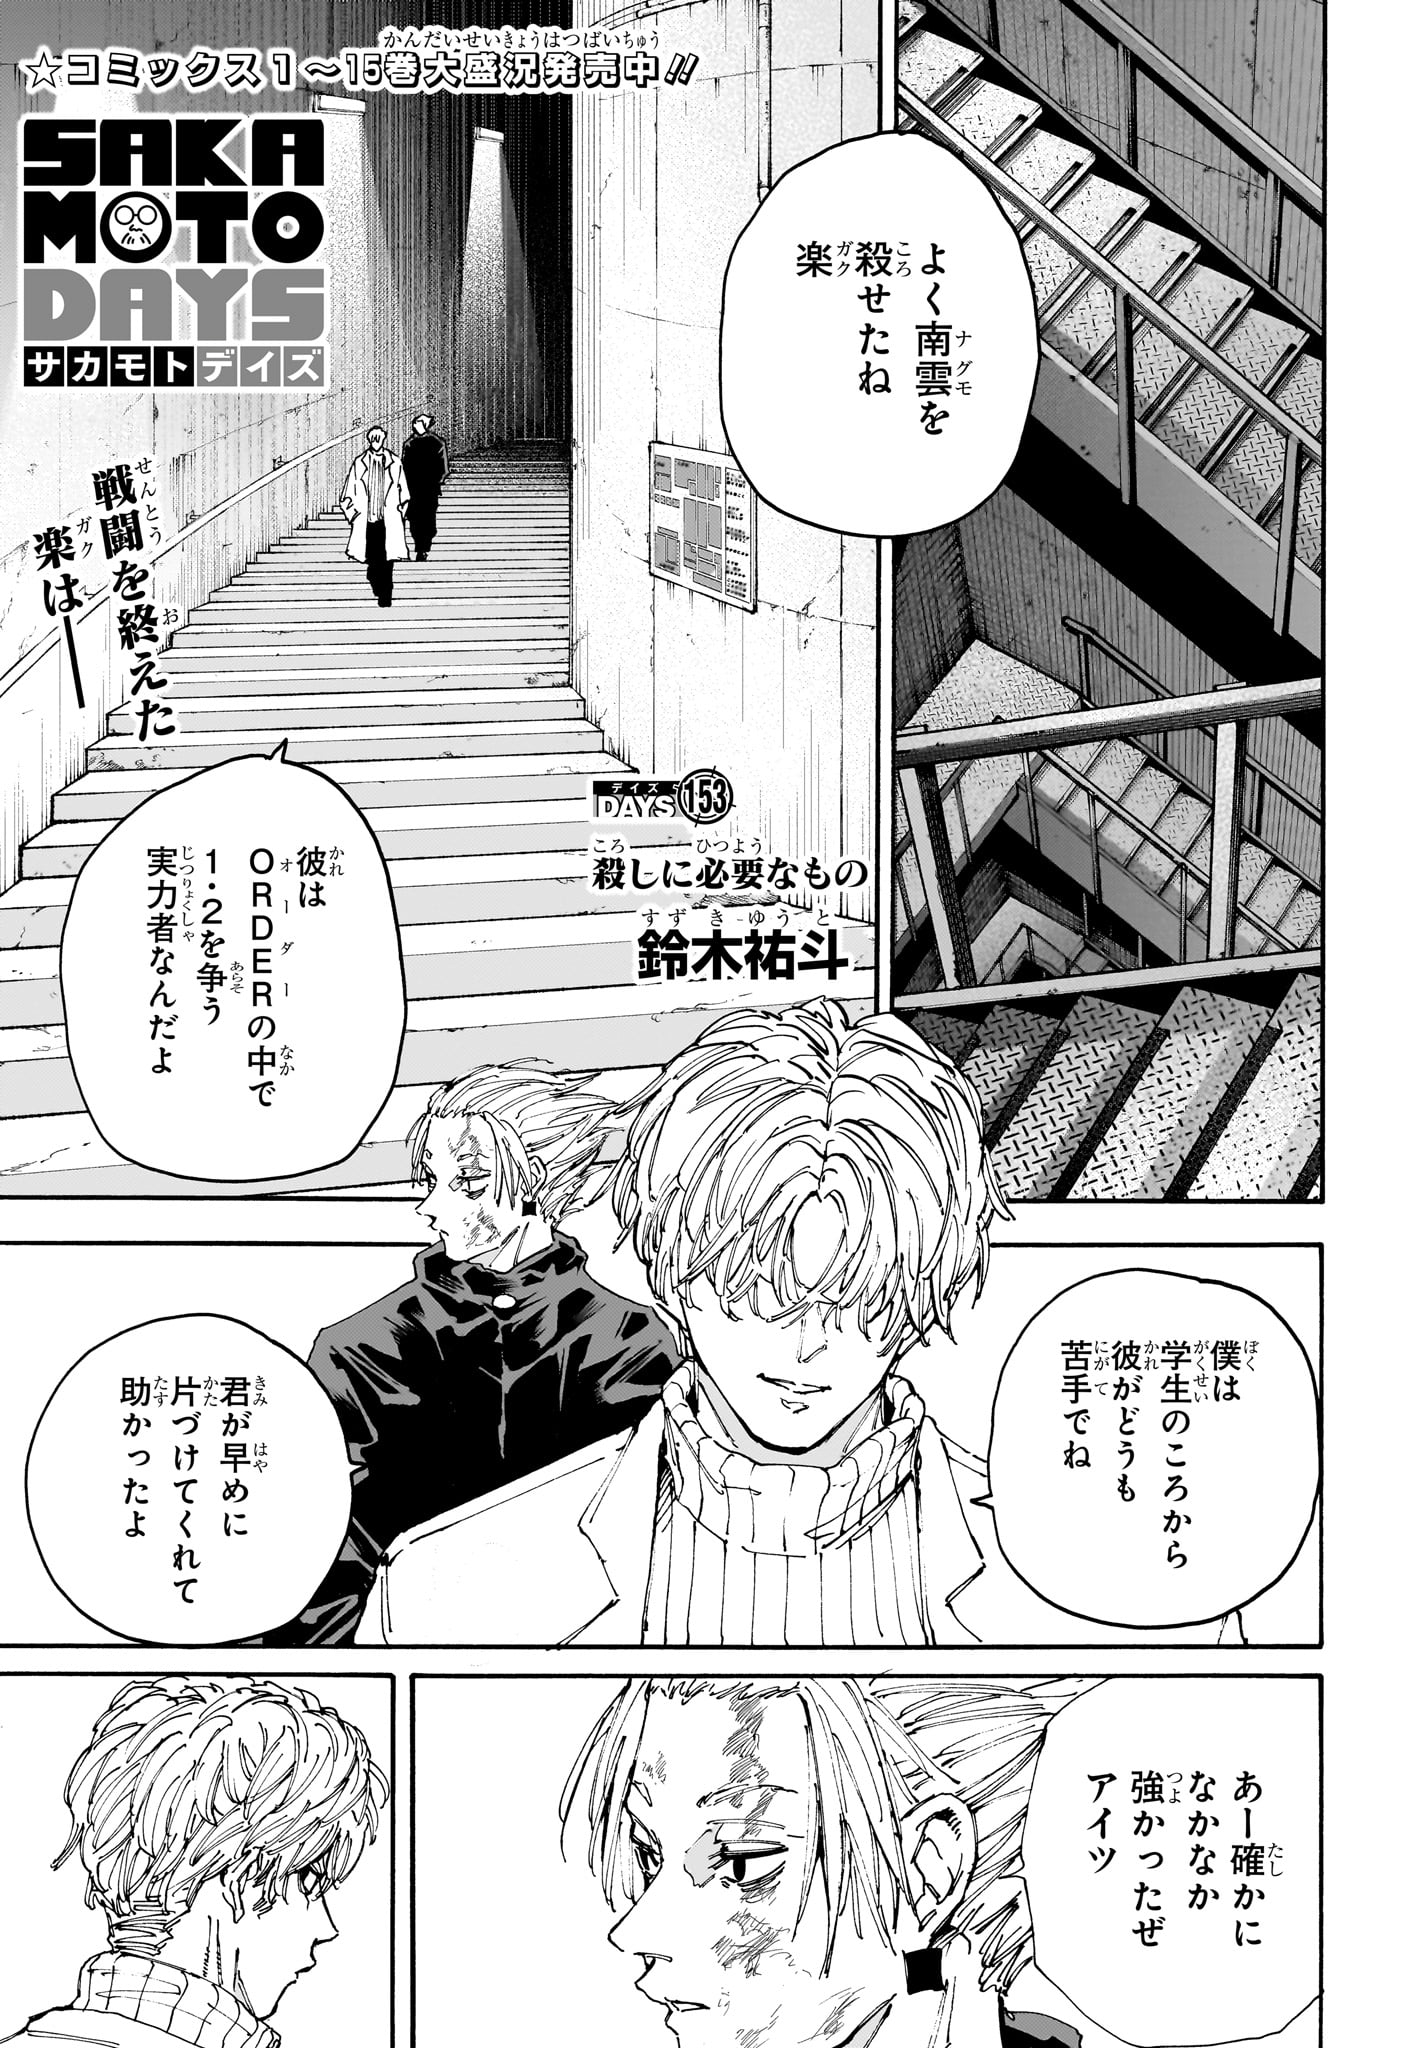 Sakamoto Days - Chapter 153 - Page 1